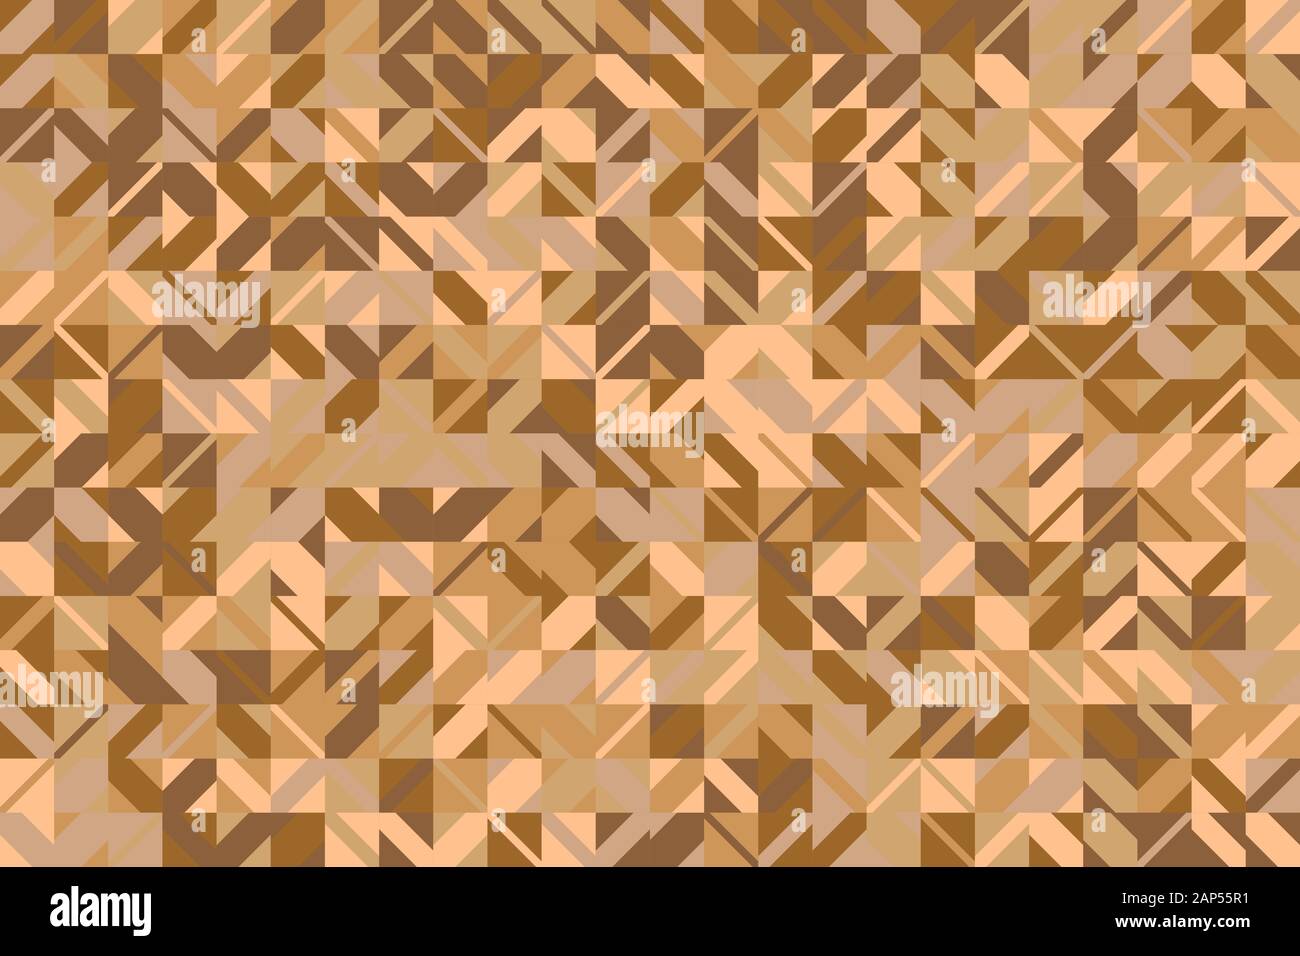 Abstrakte geometrische Muster Hintergrund - Geometrische bunte Vektor Grafik Design Stock Vektor